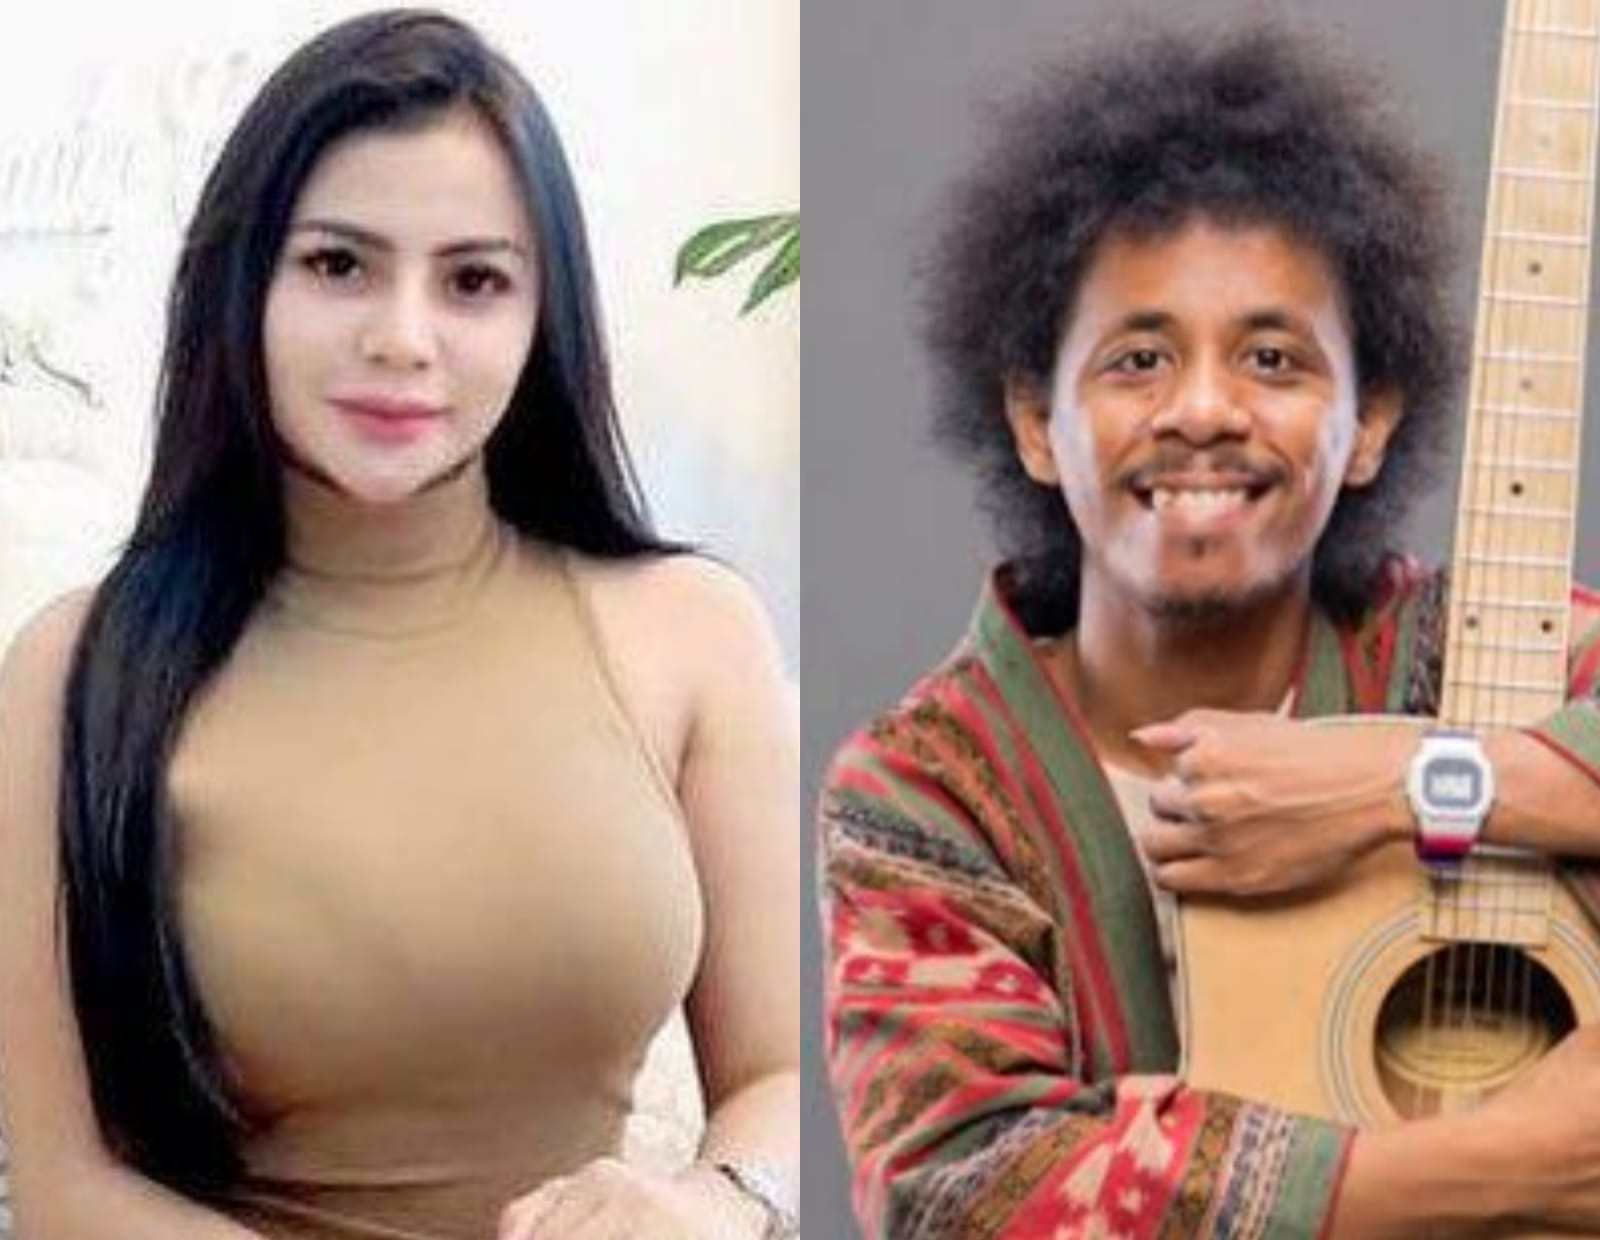 Deretan Artis Asal Sulawesi Tenggara Sukses di Dunia Hiburan, Nomor 3 Terjerat Skandal Prostitusi 